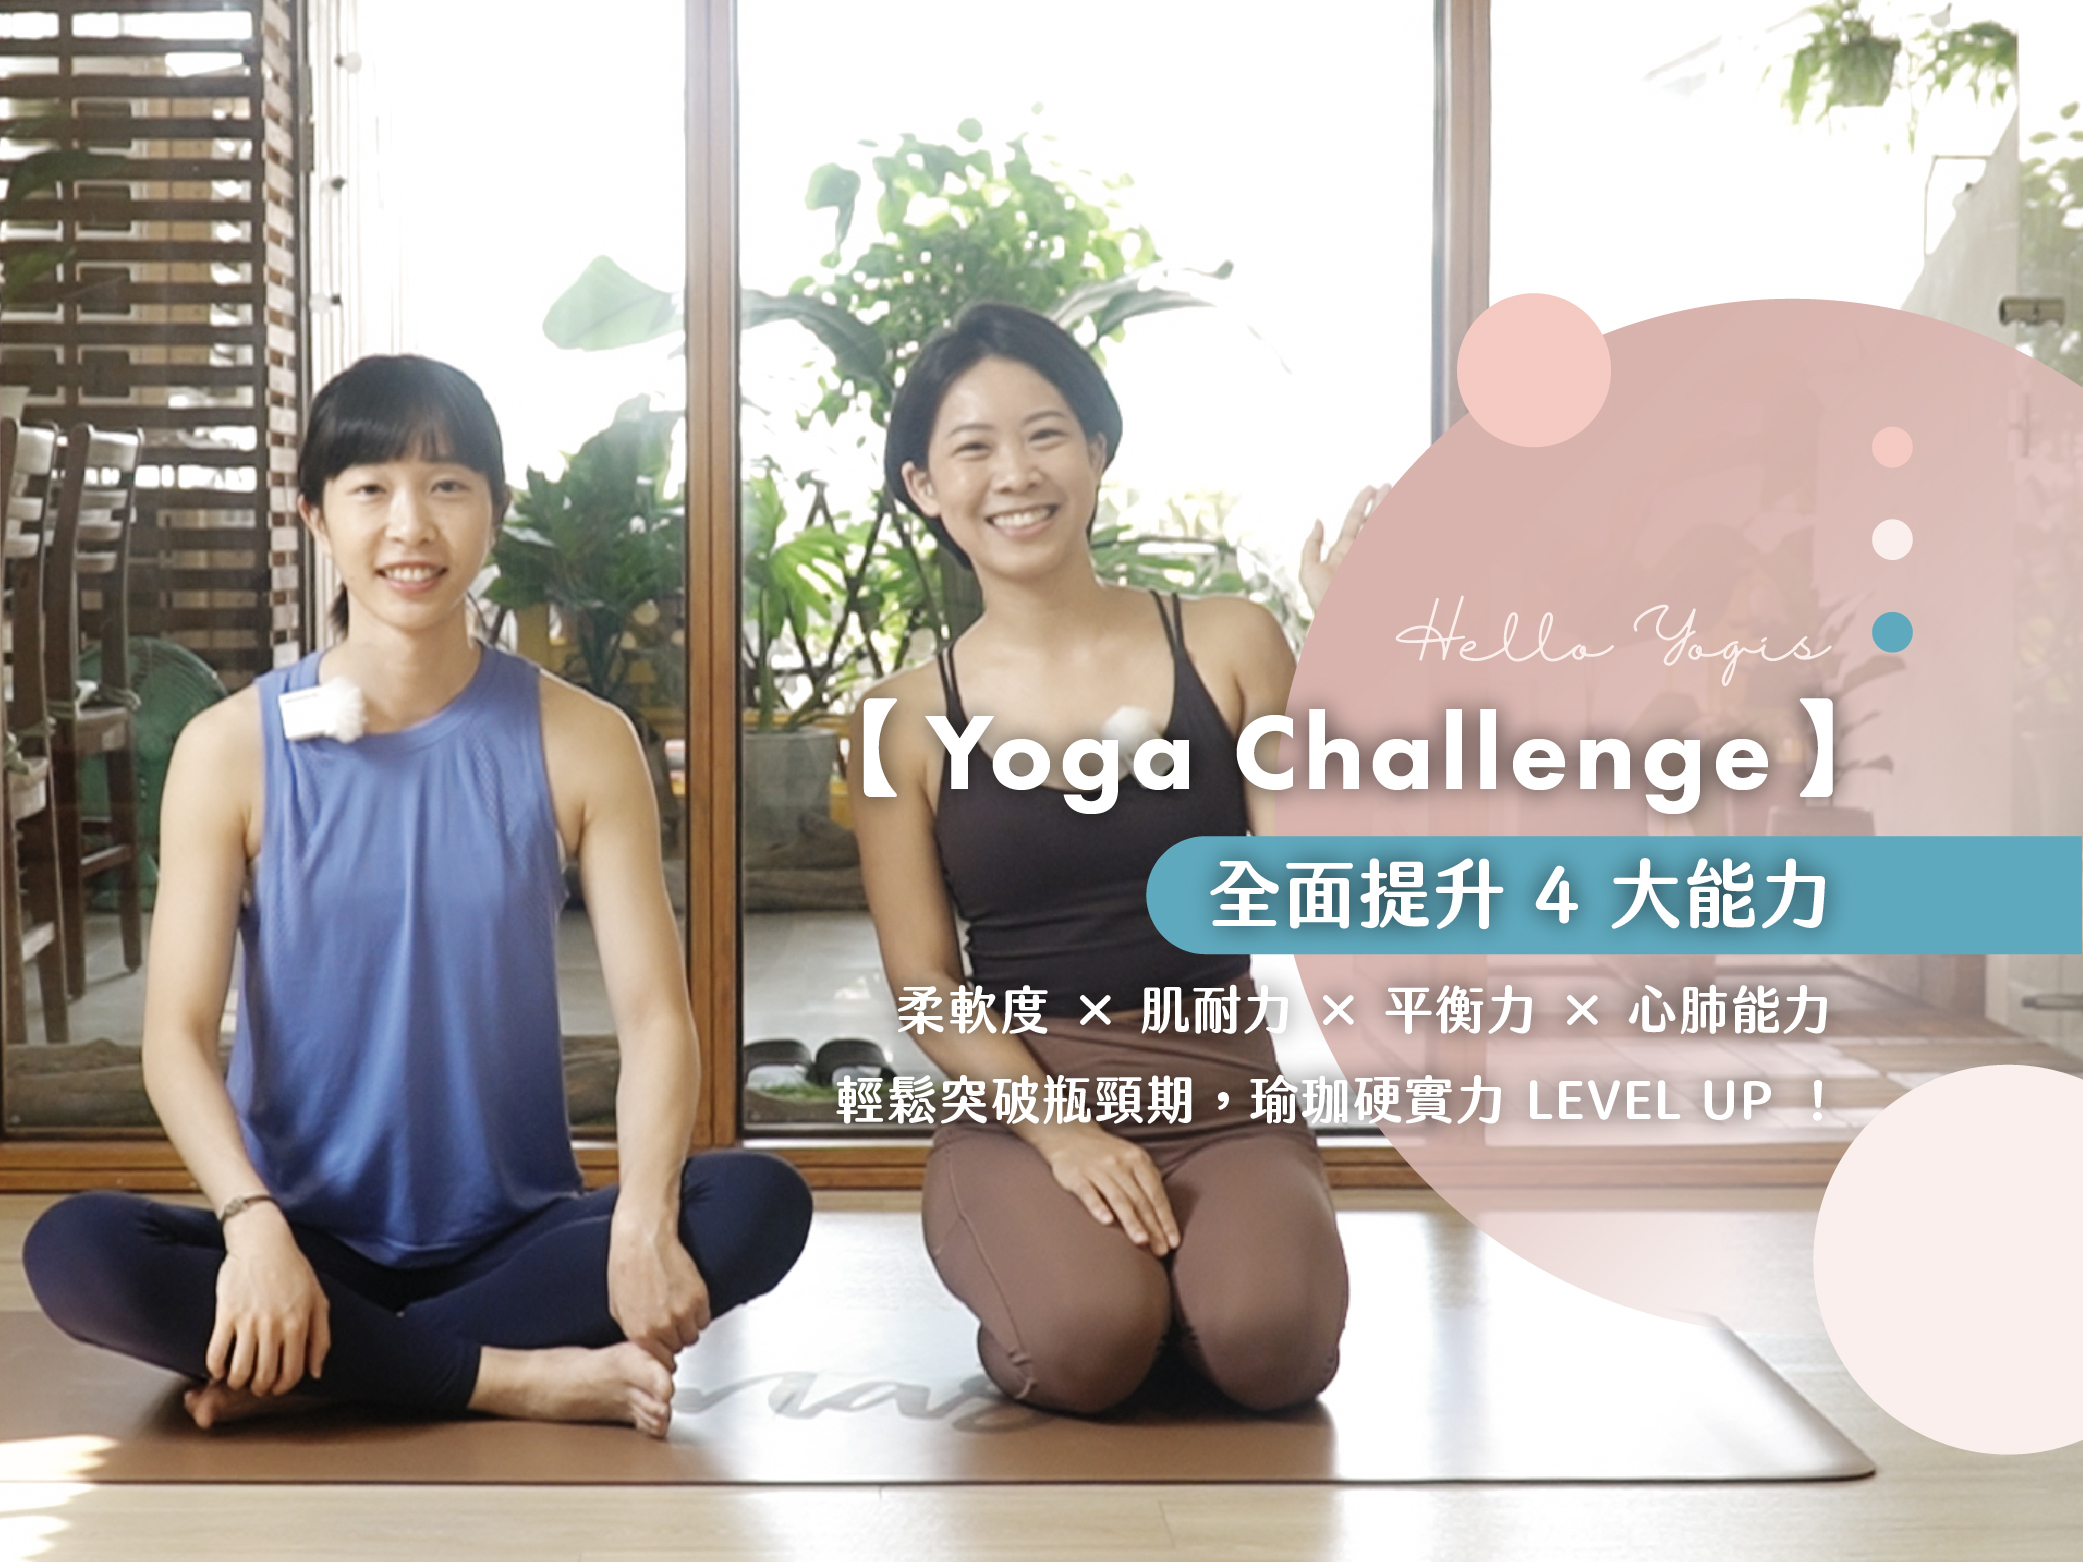 56 Yoga Challenge